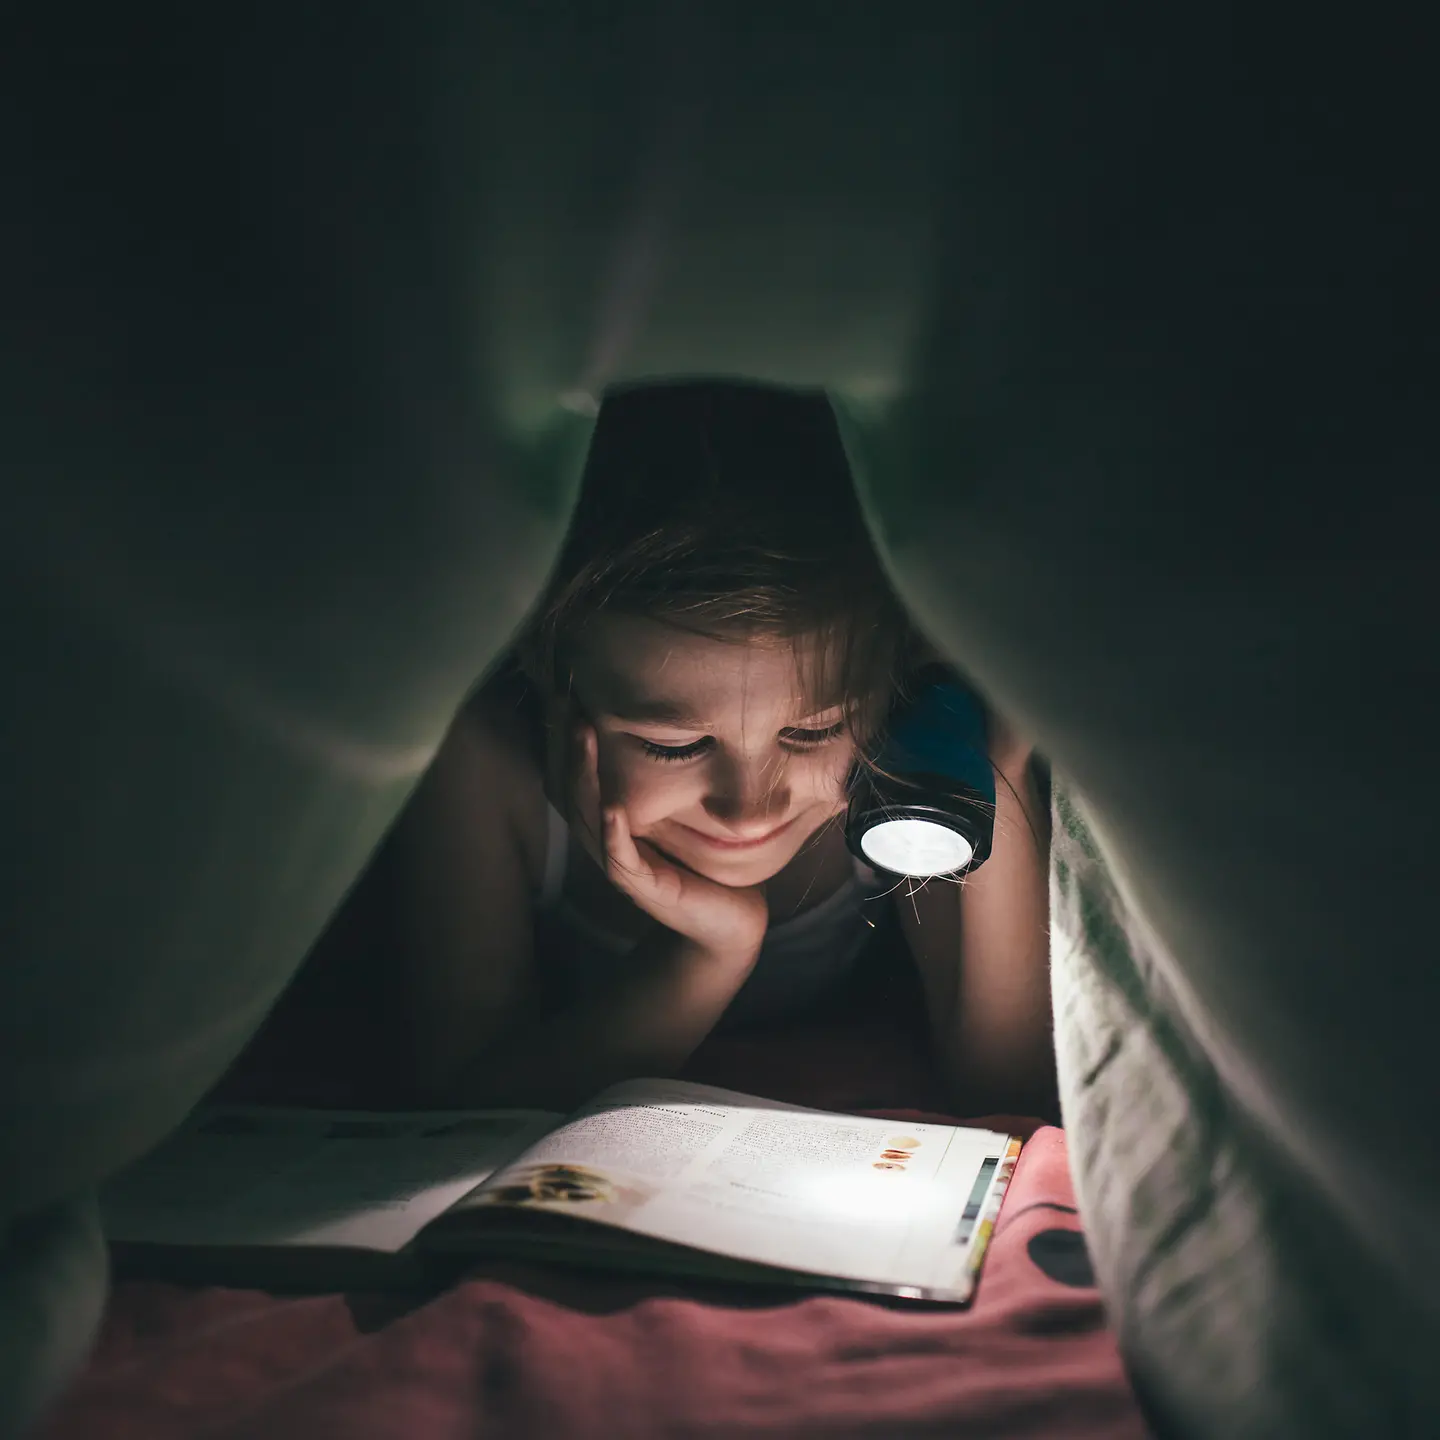 Ein Mädchen liegt im Dunkeln unter seiner Bettdecke und liest ein Buch, welches es mit einer Taschenlampe anstrahlt.chenlampe auf ein Buch